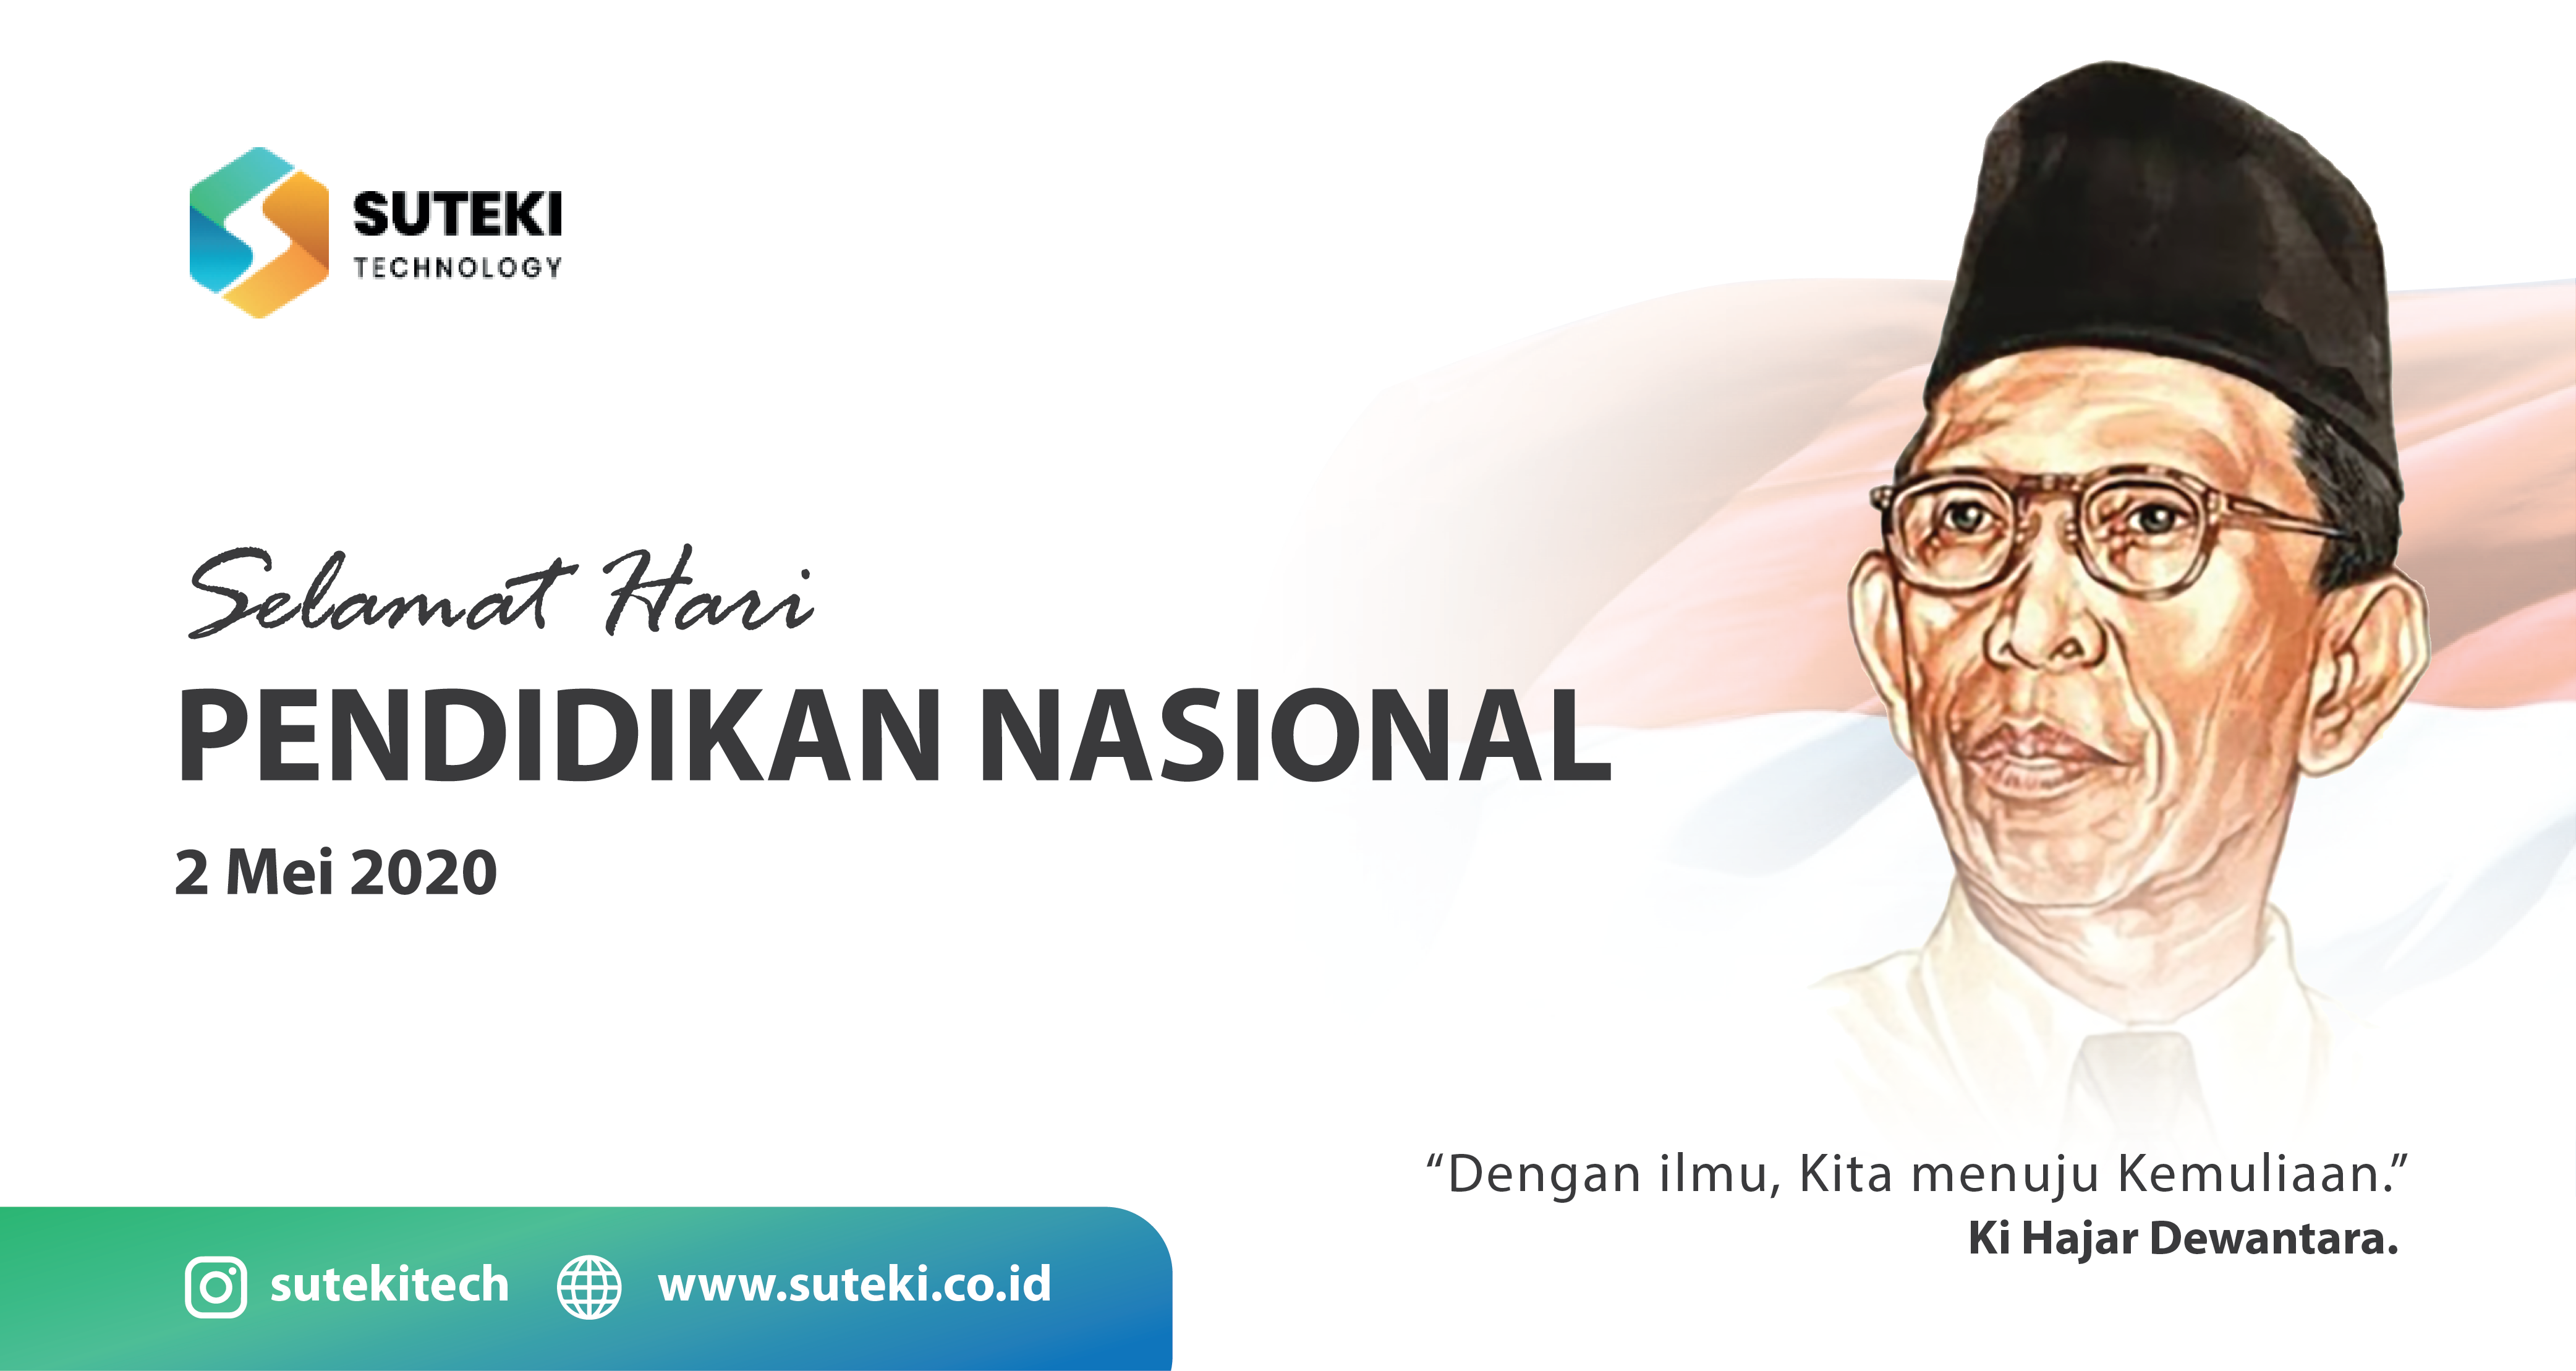 Selamat Hari Pendidikan Nasional Indonesia, 2 Mei 2020  Beranda Hari Pendidikan Nasional